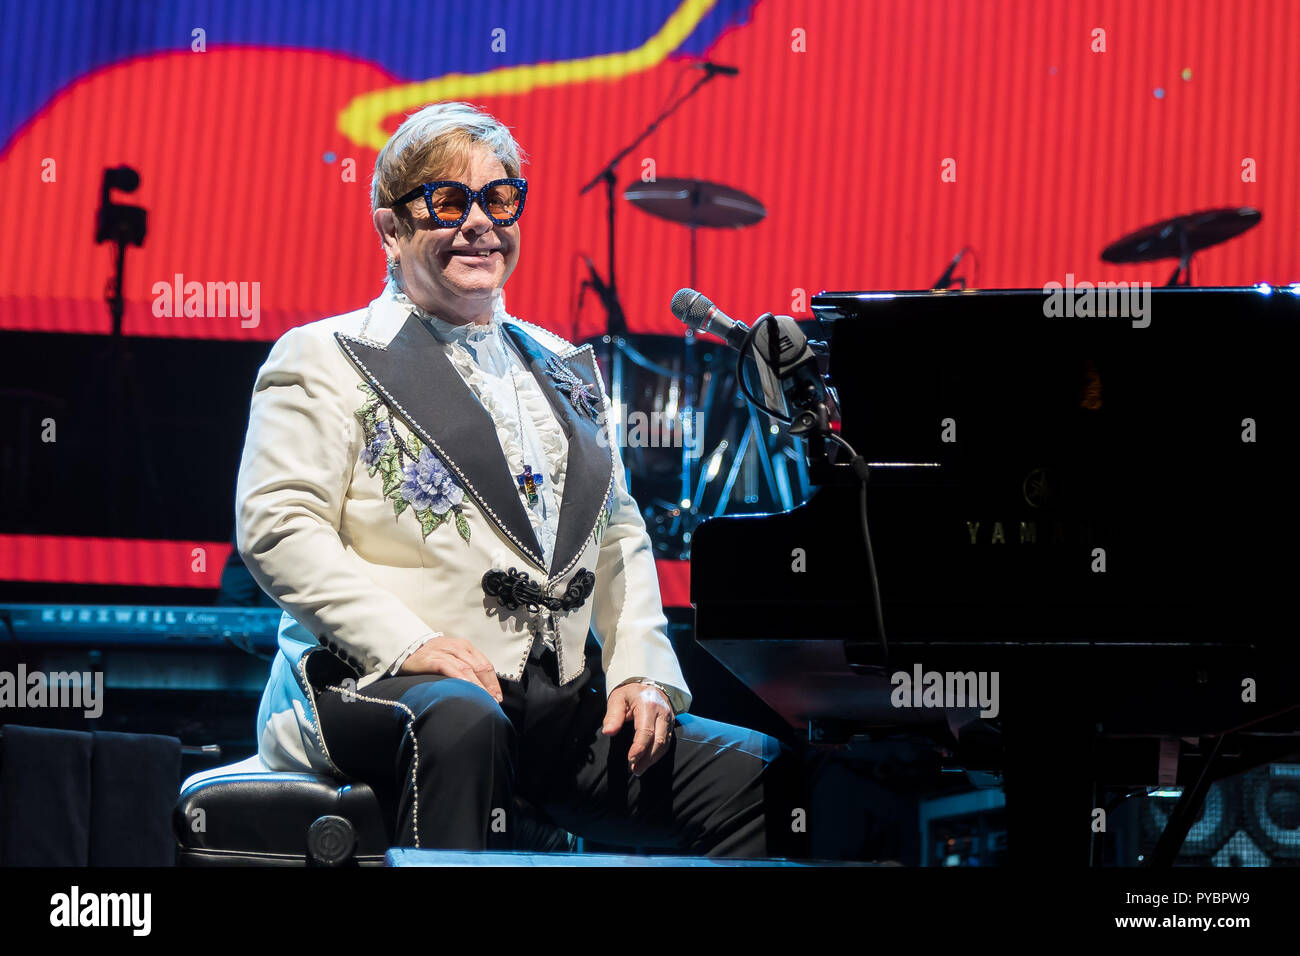 Chicago, Illinois, USA. 26Th Oct, 2018. Elton John effectue 'Yellow Brick Road' Farewell Tour à l'United Center le 26 octobre 2018 à Chicago, IL. Crédit : David Davis/Espace d'image/media/Alamy Punch Live News Banque D'Images